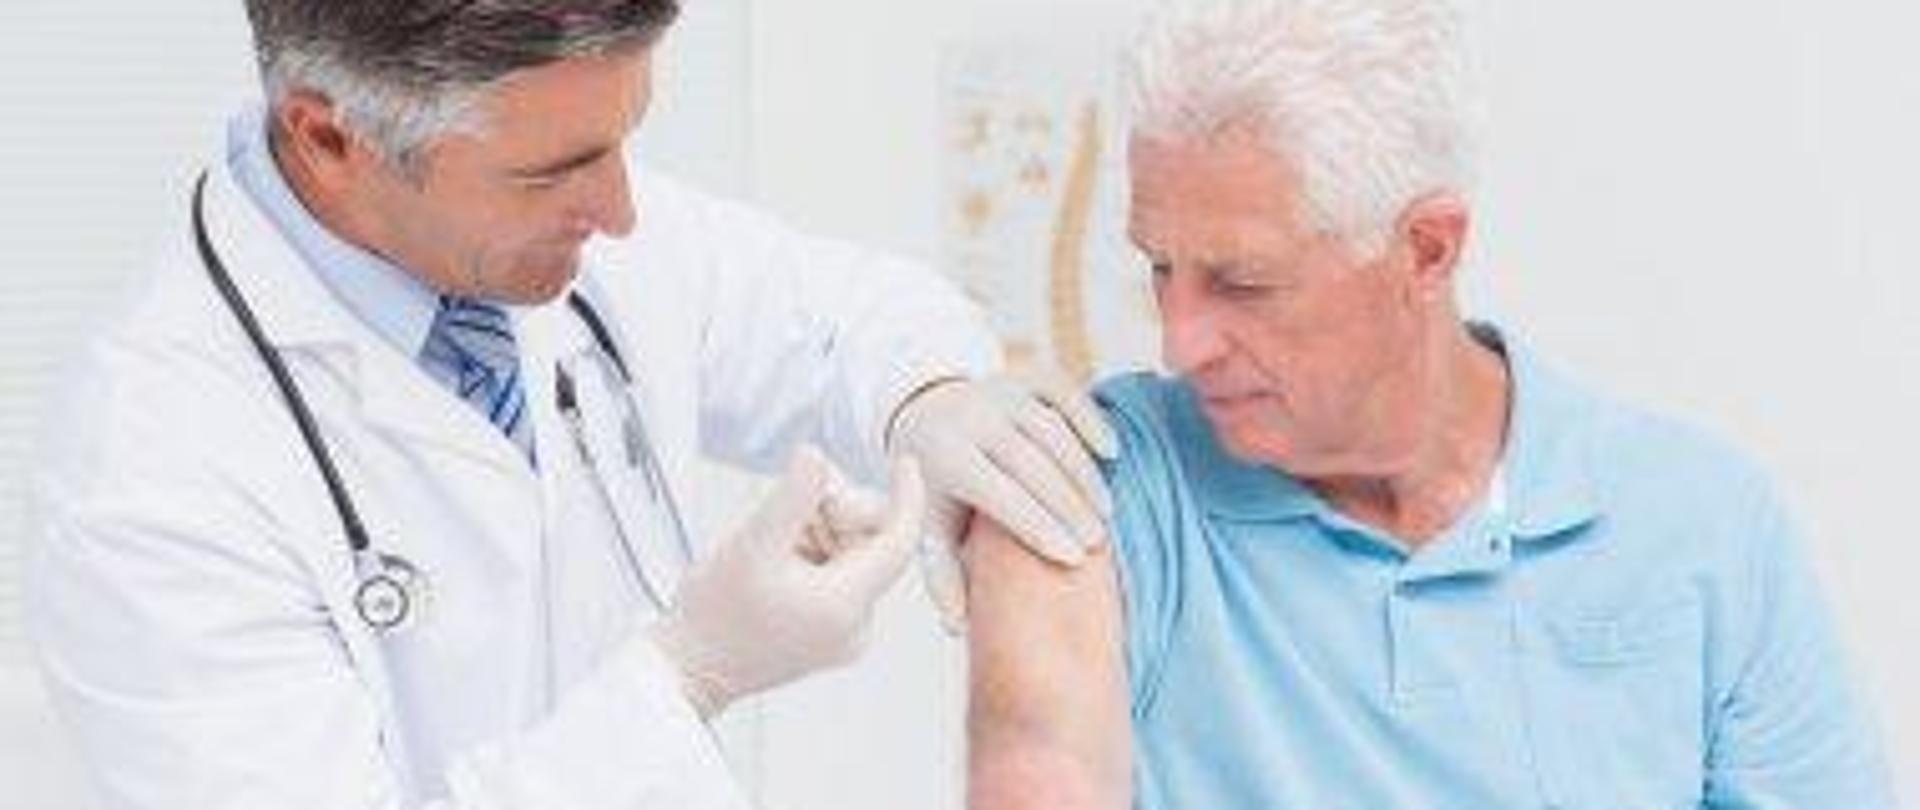 Doktor podaje szczepionkę w ramię osobie dorosłej.